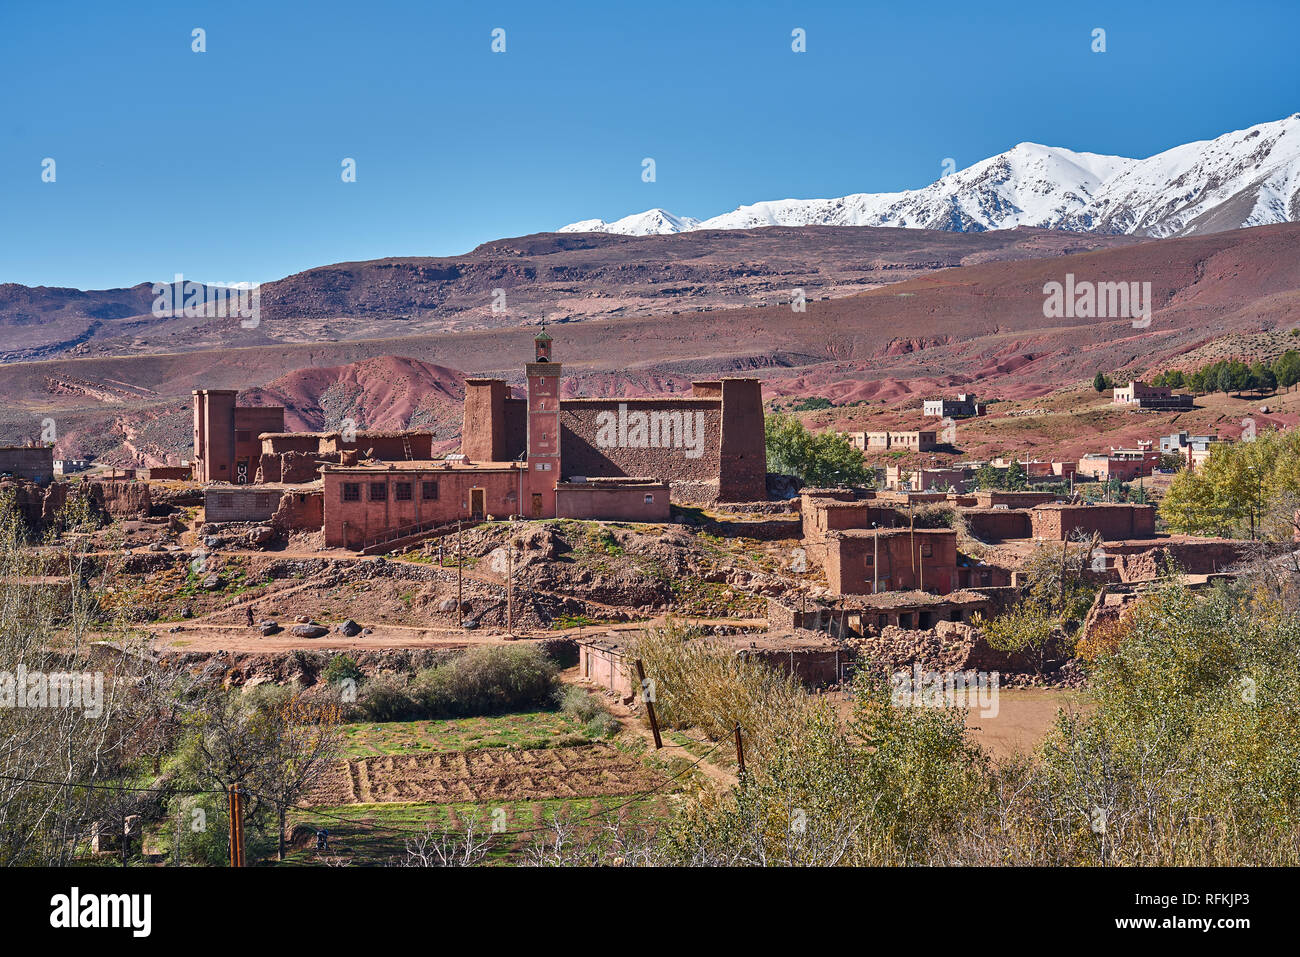 Le village traditionnel en briques de boue abrite la mosquée. Les montagnes enneigées de l'Atlas sont à l'arrière. Pris près d'Ighrem n'Ougdal, province d'Ouarzazate, Maroc Banque D'Images